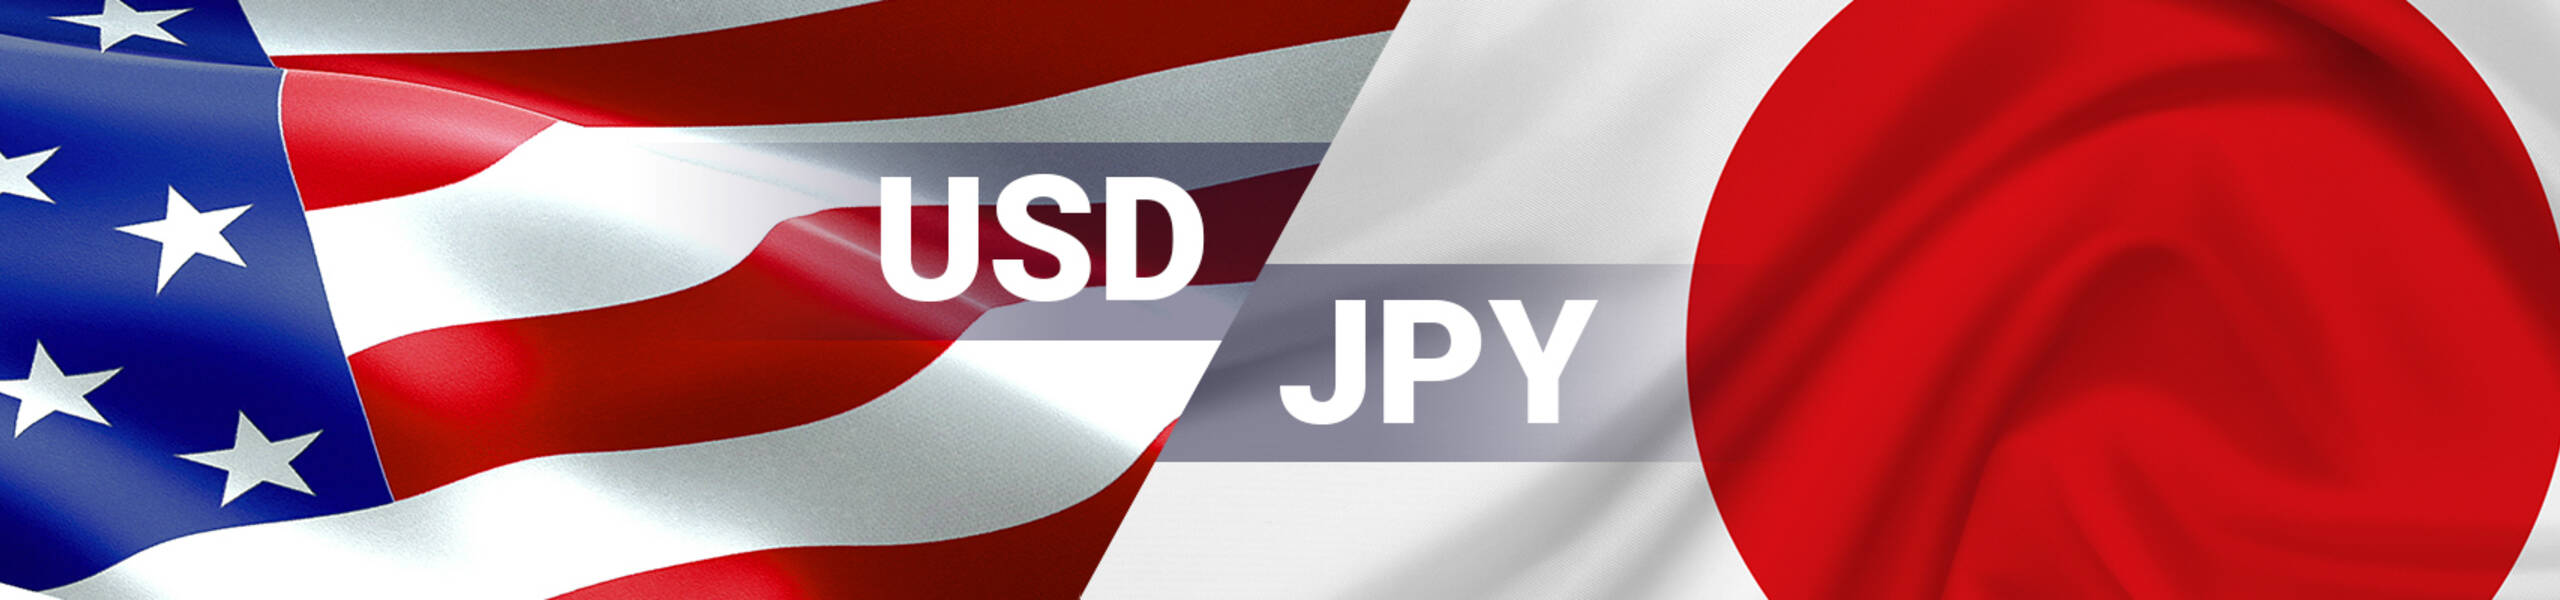 USD/JPY 週間マーケットレポート 2018/05/21 ～2018/05/25